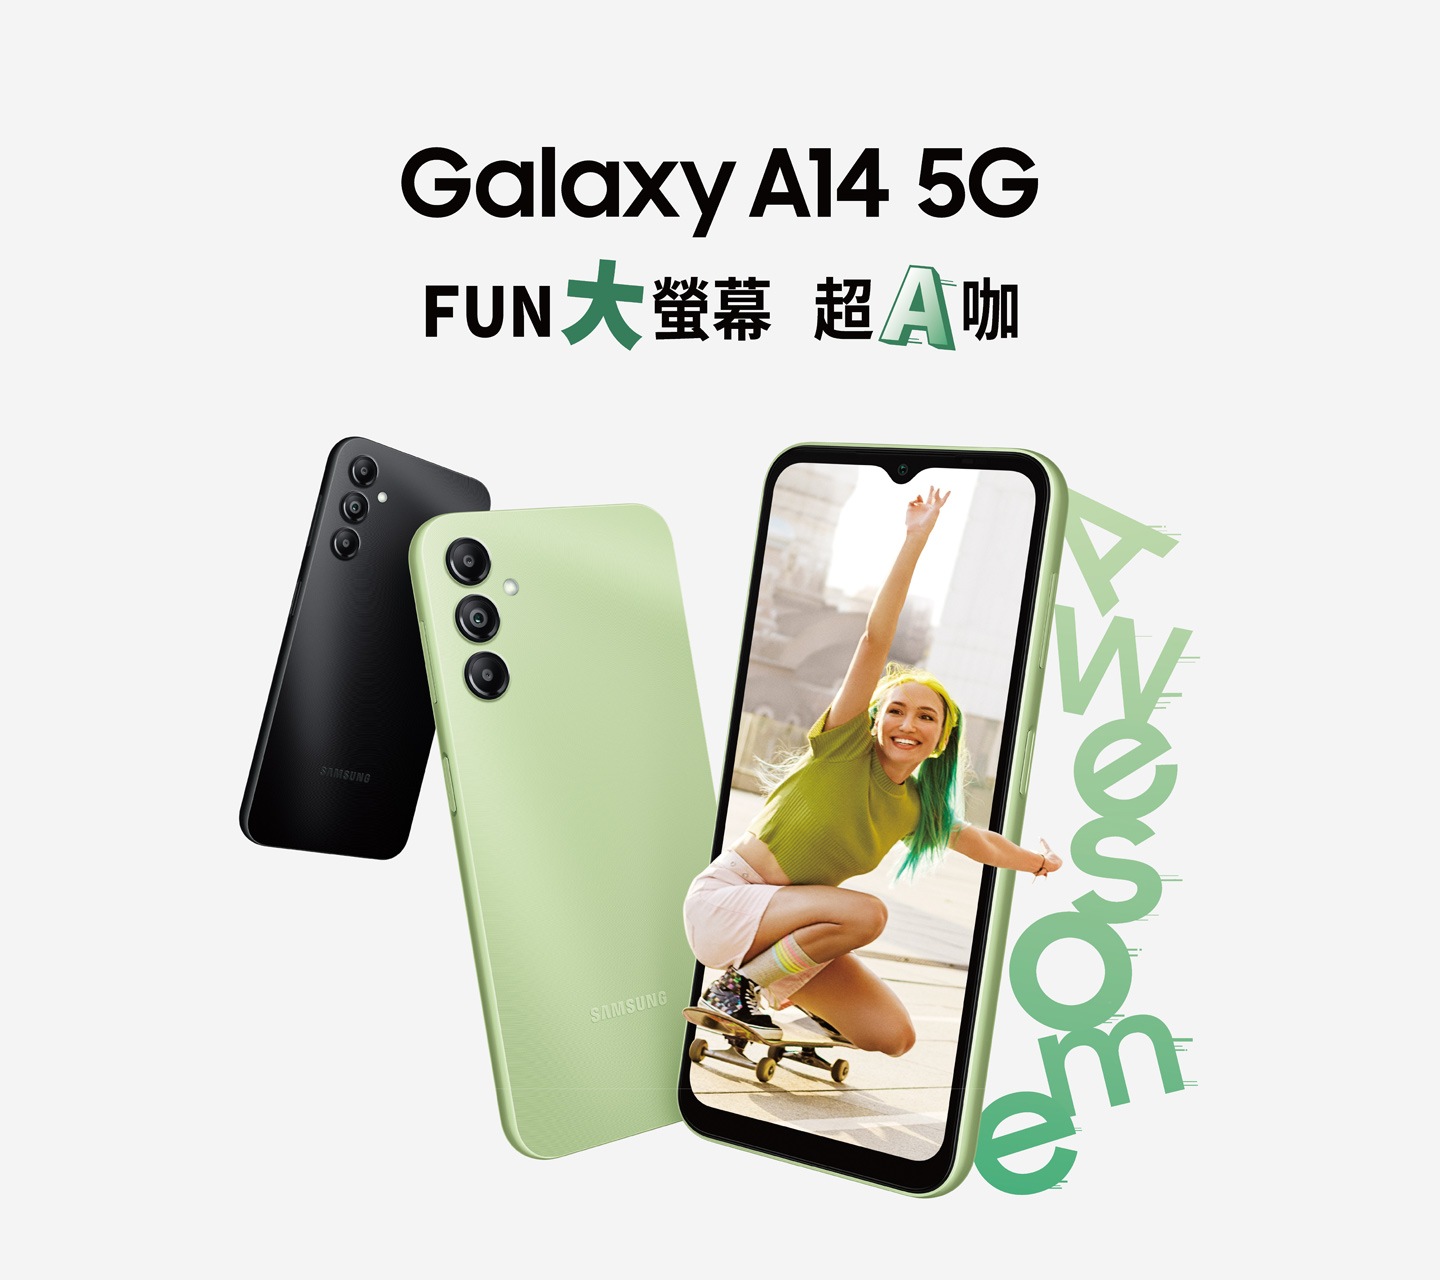 三款 Galaxy A14 5G 以不同角度前後排列，右側一台正面的手機，螢幕上顯示一位身穿綠色，蹲在滑板上的女子。旁有綠色 Awesome 字樣。「Galaxy A14 5G FUN大螢幕超A咖」字樣在手機的上方。